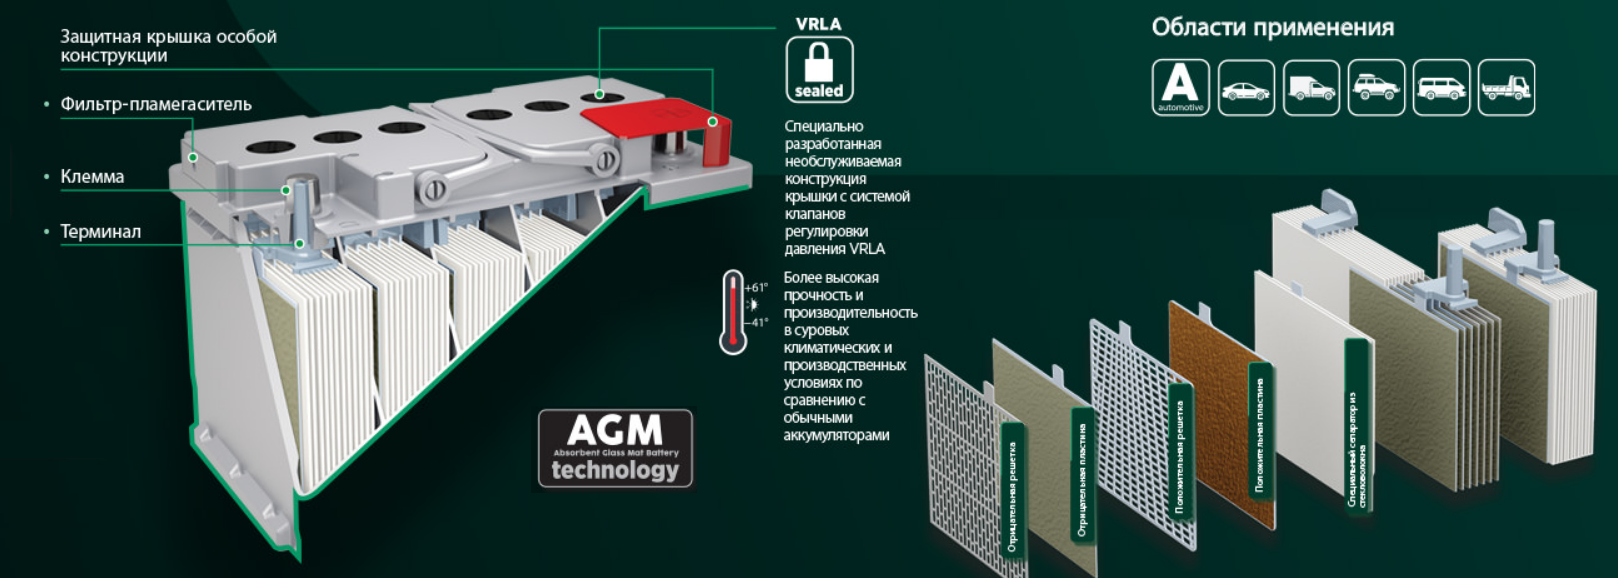 Основные характеристики аккумуляторов agm (absorbent glass mat)